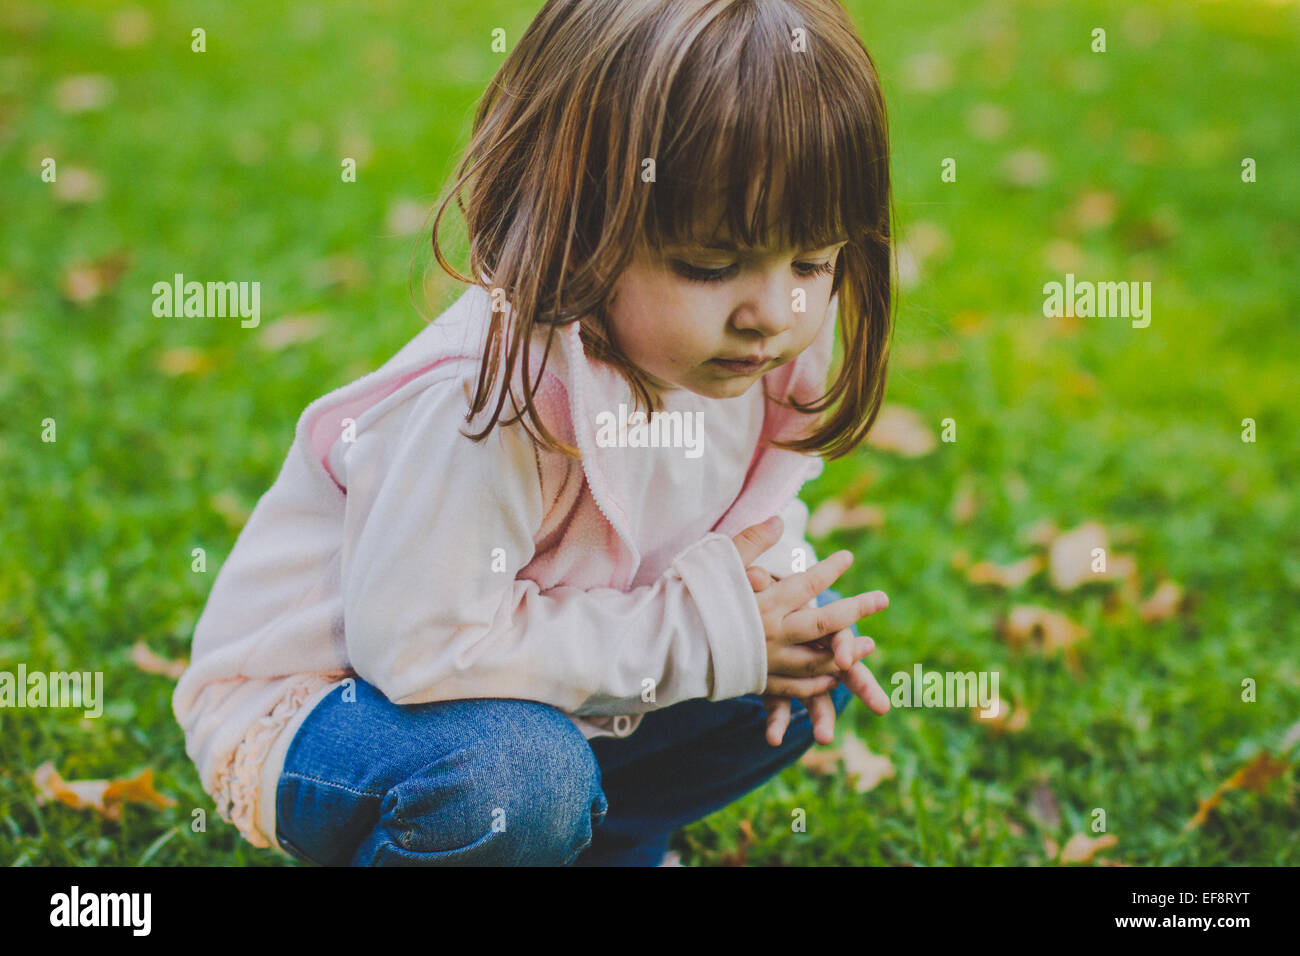 Retrato de chica agachada en un parque público Foto de stock